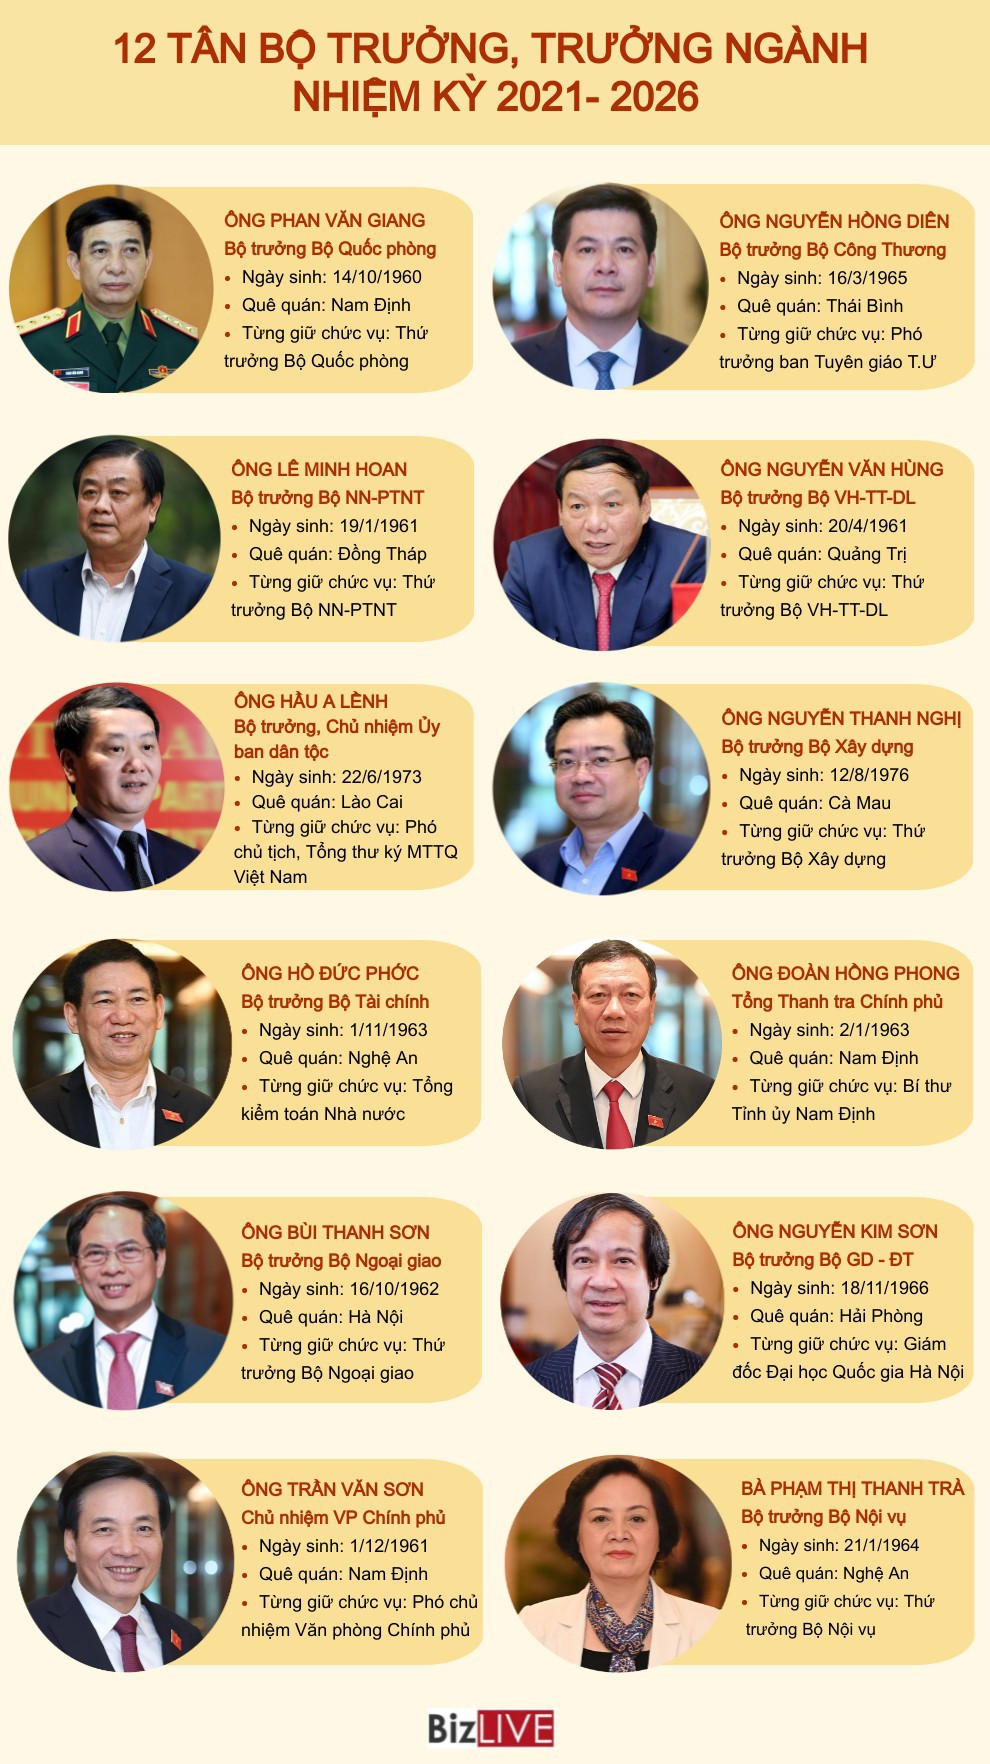 [Infographic] Chân dung 12 tân bộ trưởng, trưởng ngành nhiệm kỳ 2021 - 2026 - Ảnh 1